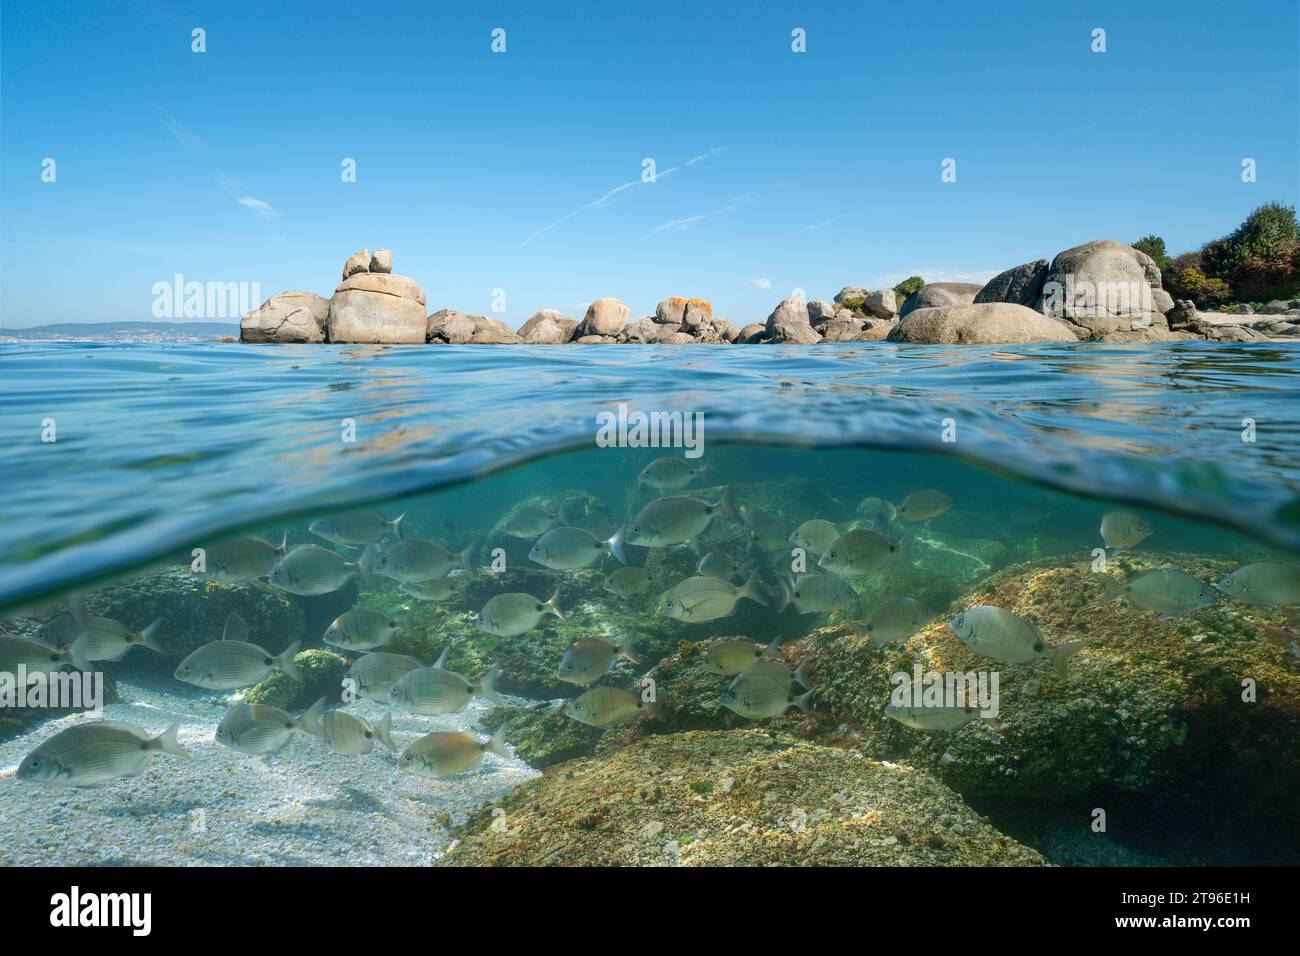 Küste mit Felsbrocken und einer Fischschwärme unter Wasser, Atlantik Meereslandschaft, natürliche Landschaft, geteilter Blick über und unter der Wasseroberfläche, Spanien Stockfoto